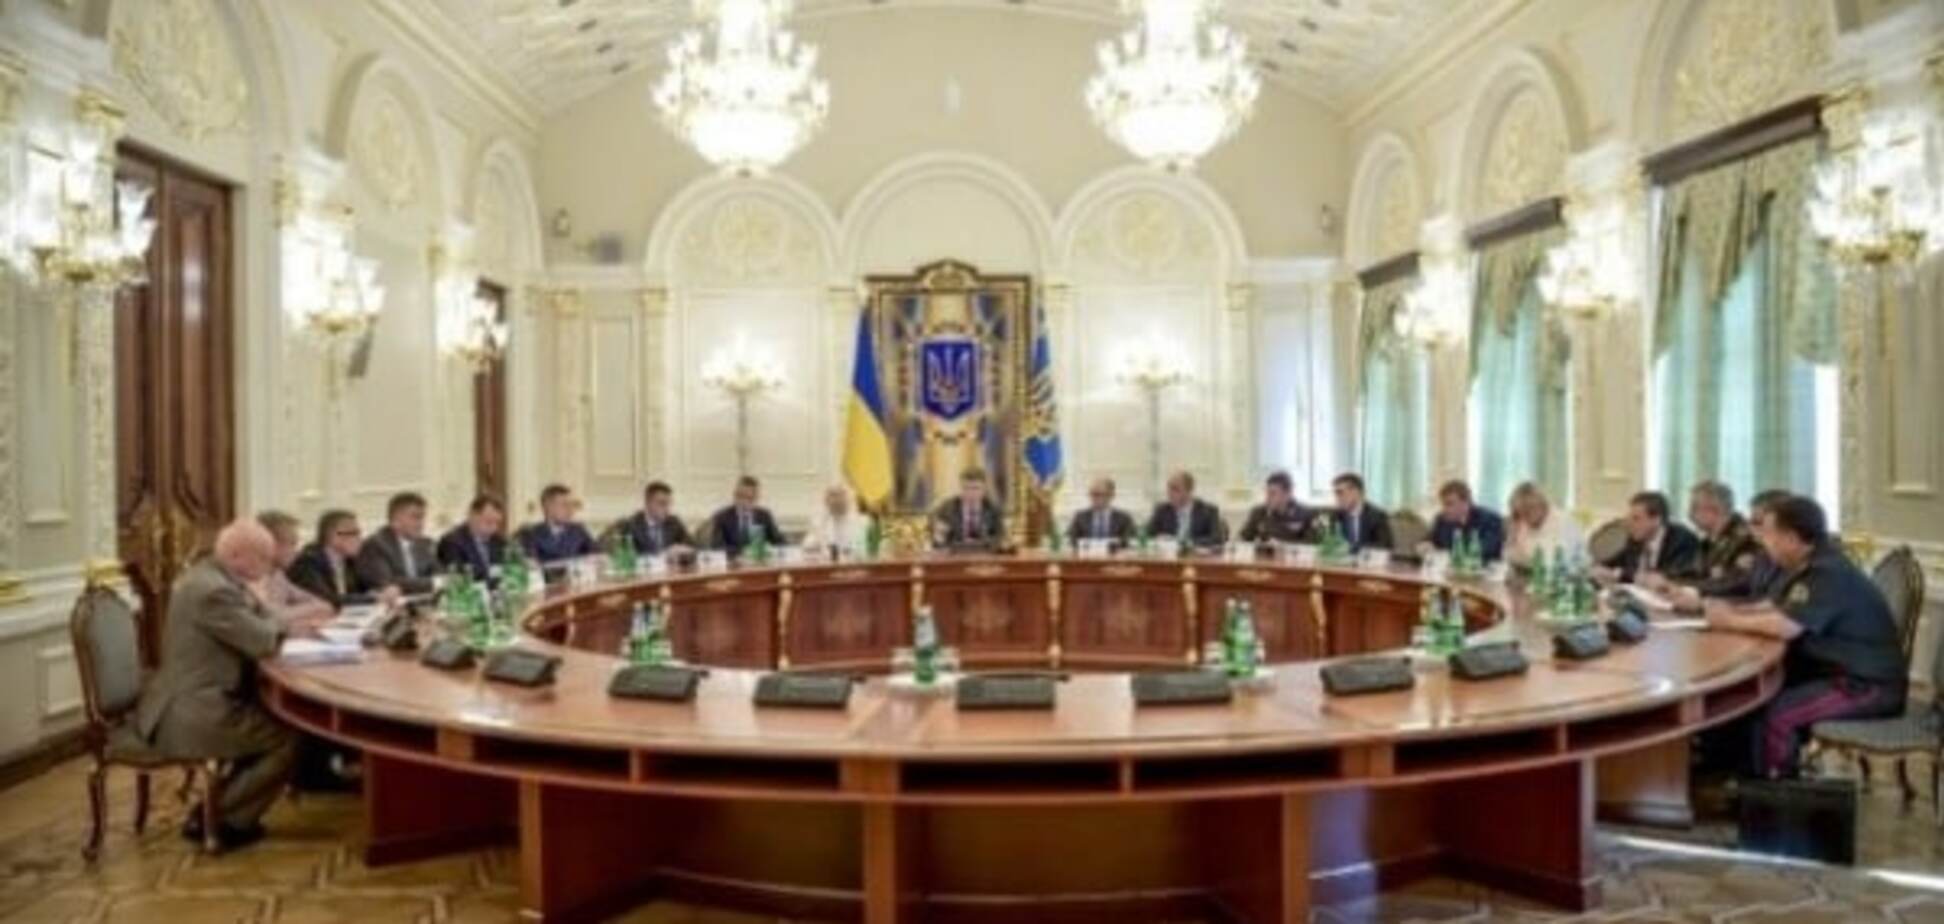 Секретна стенограма засідання РНБО щодо окупації Криму буде оприлюднена - нардеп